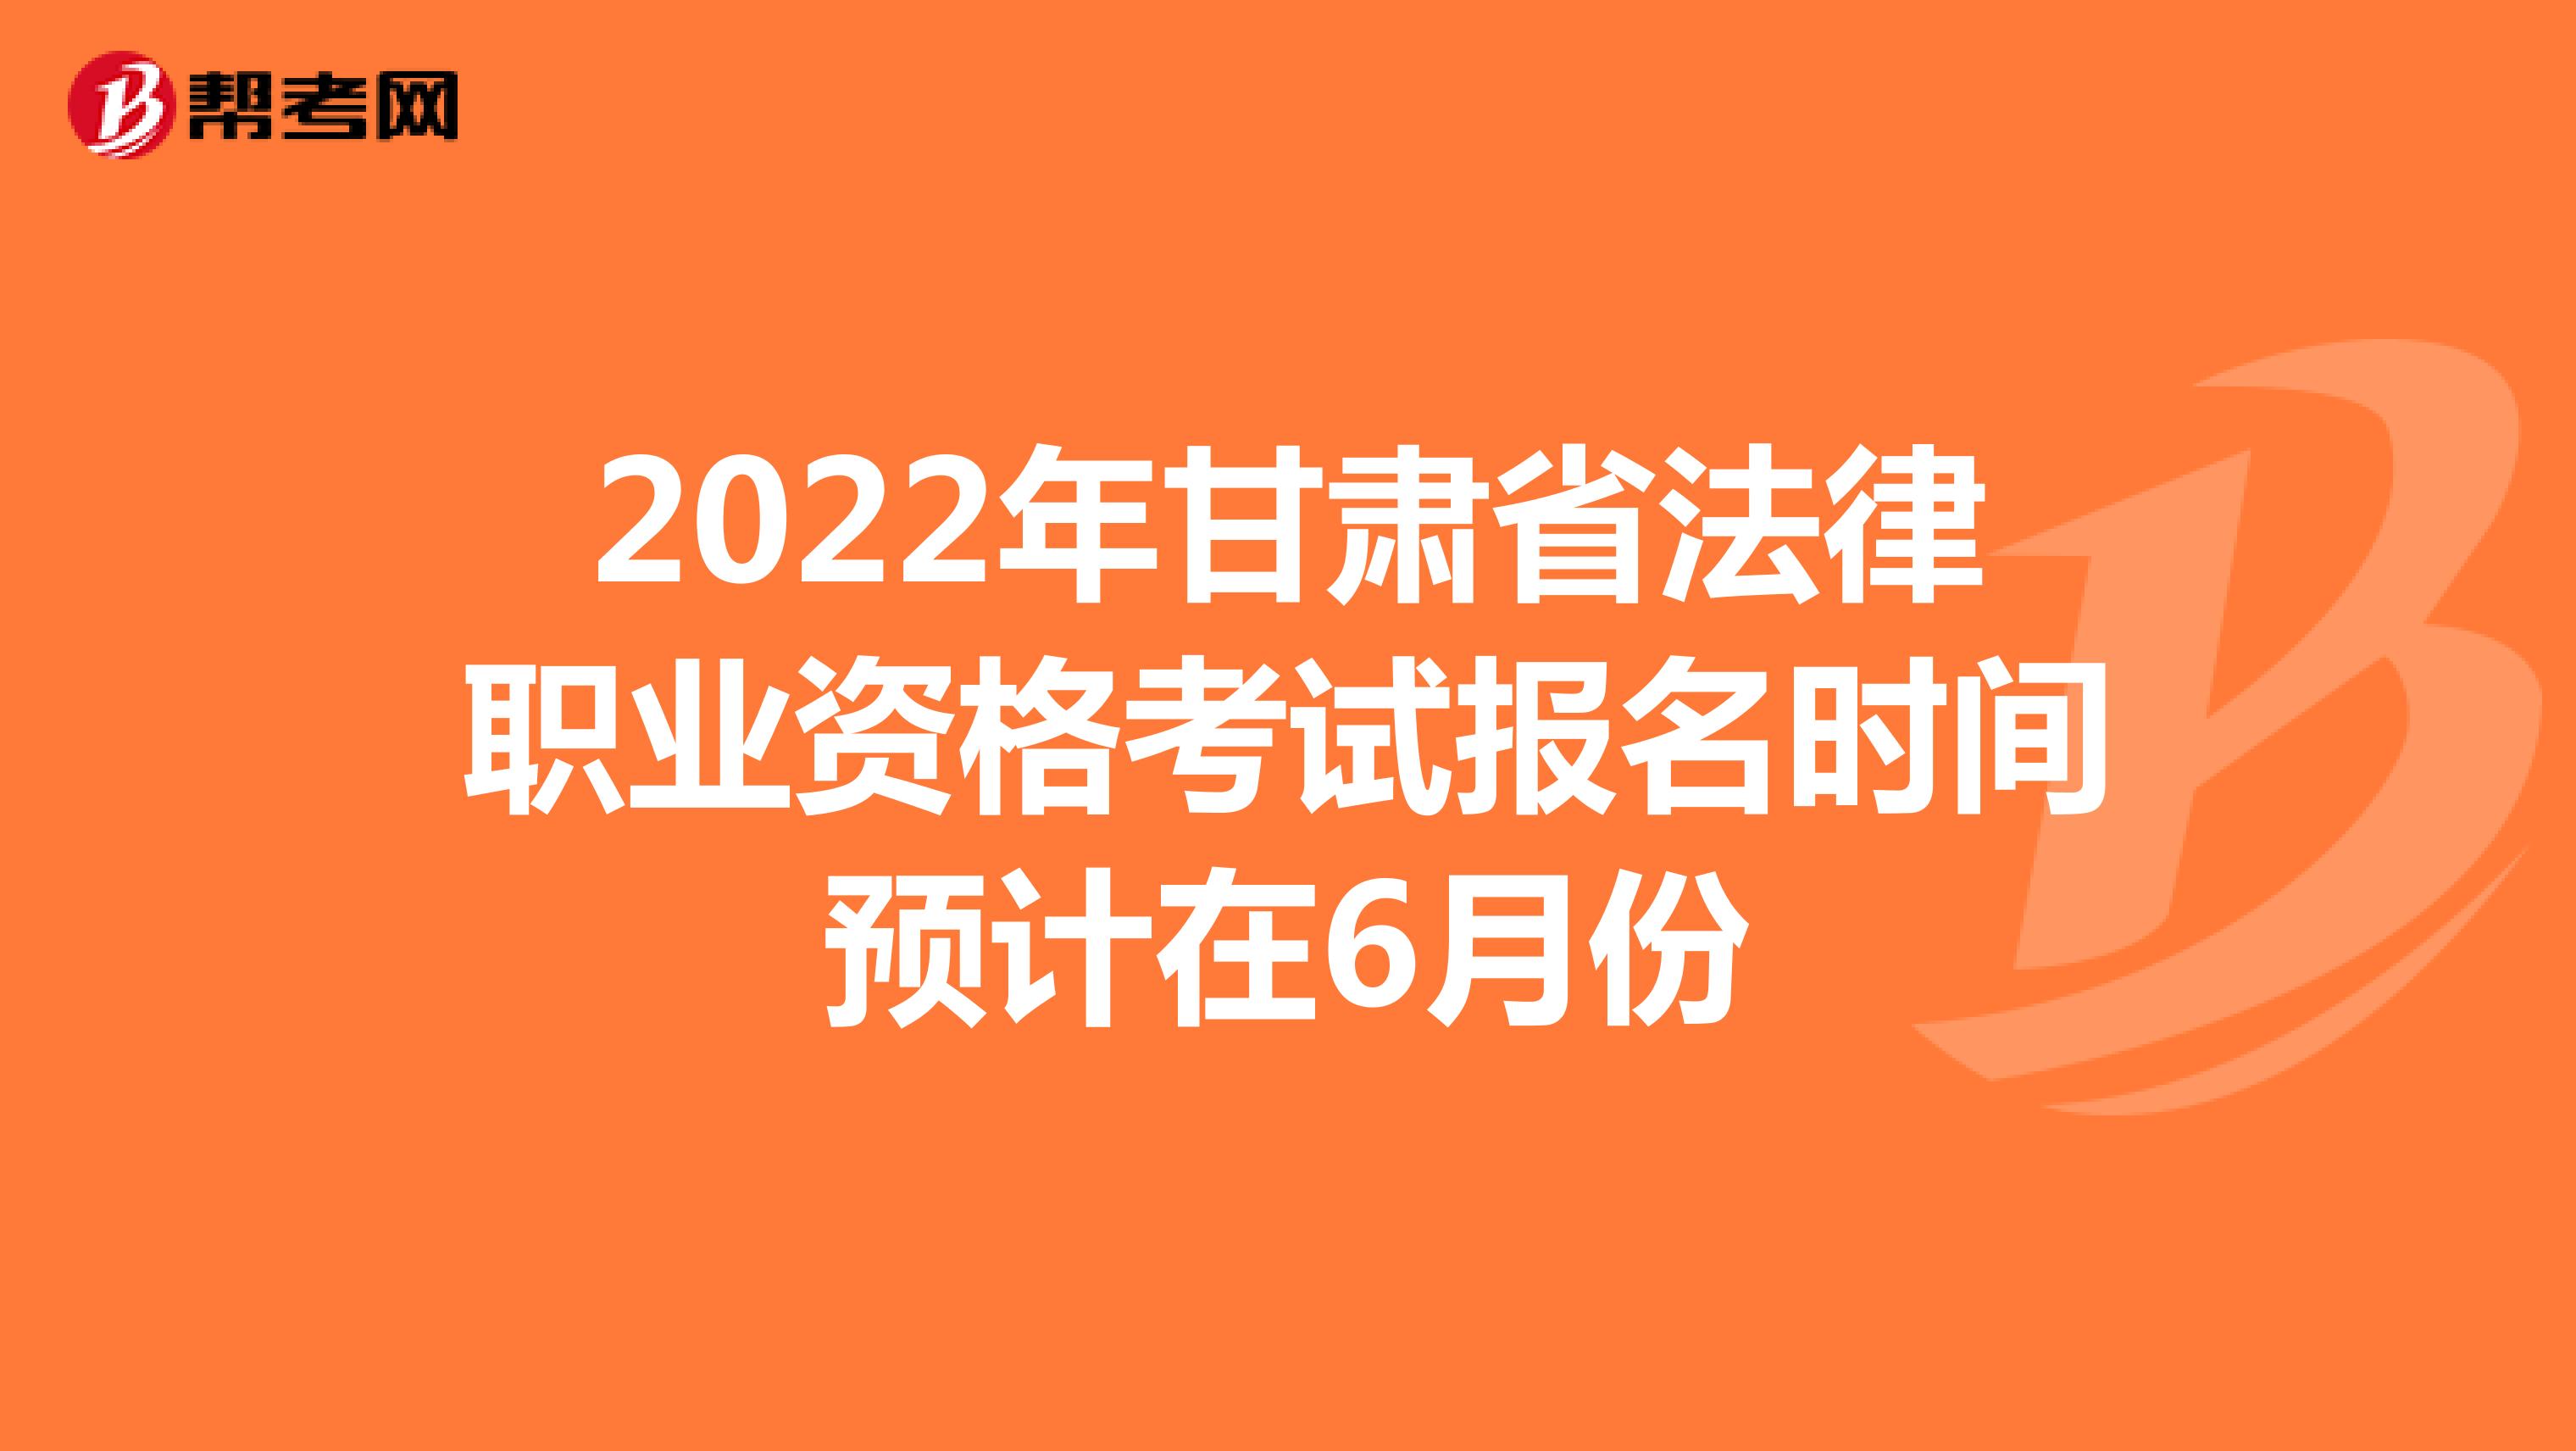 2022年甘肃省法律职业资格考试报名时间预计在6月份